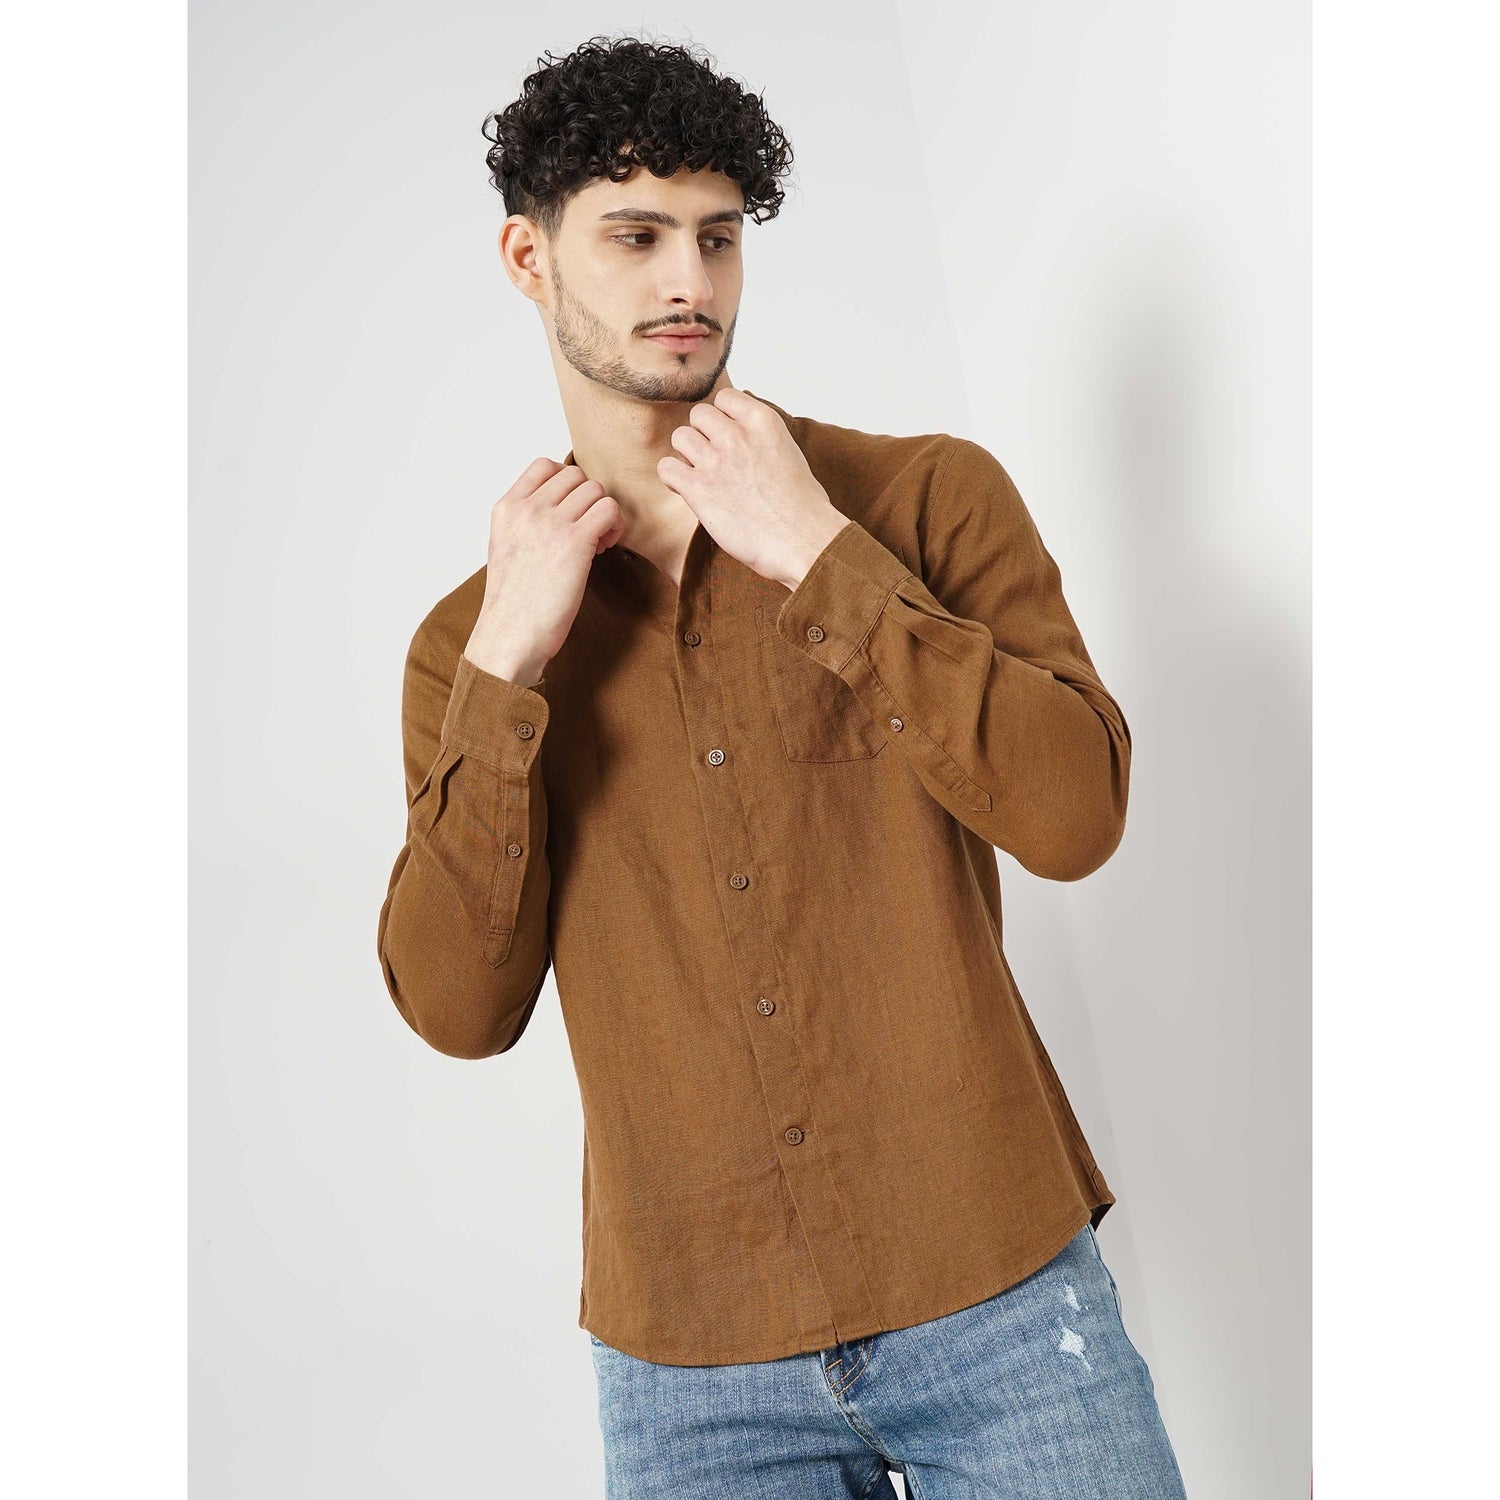 Men Brown Solid Regular Fit Linen Casual Shirt (GATALIN1)